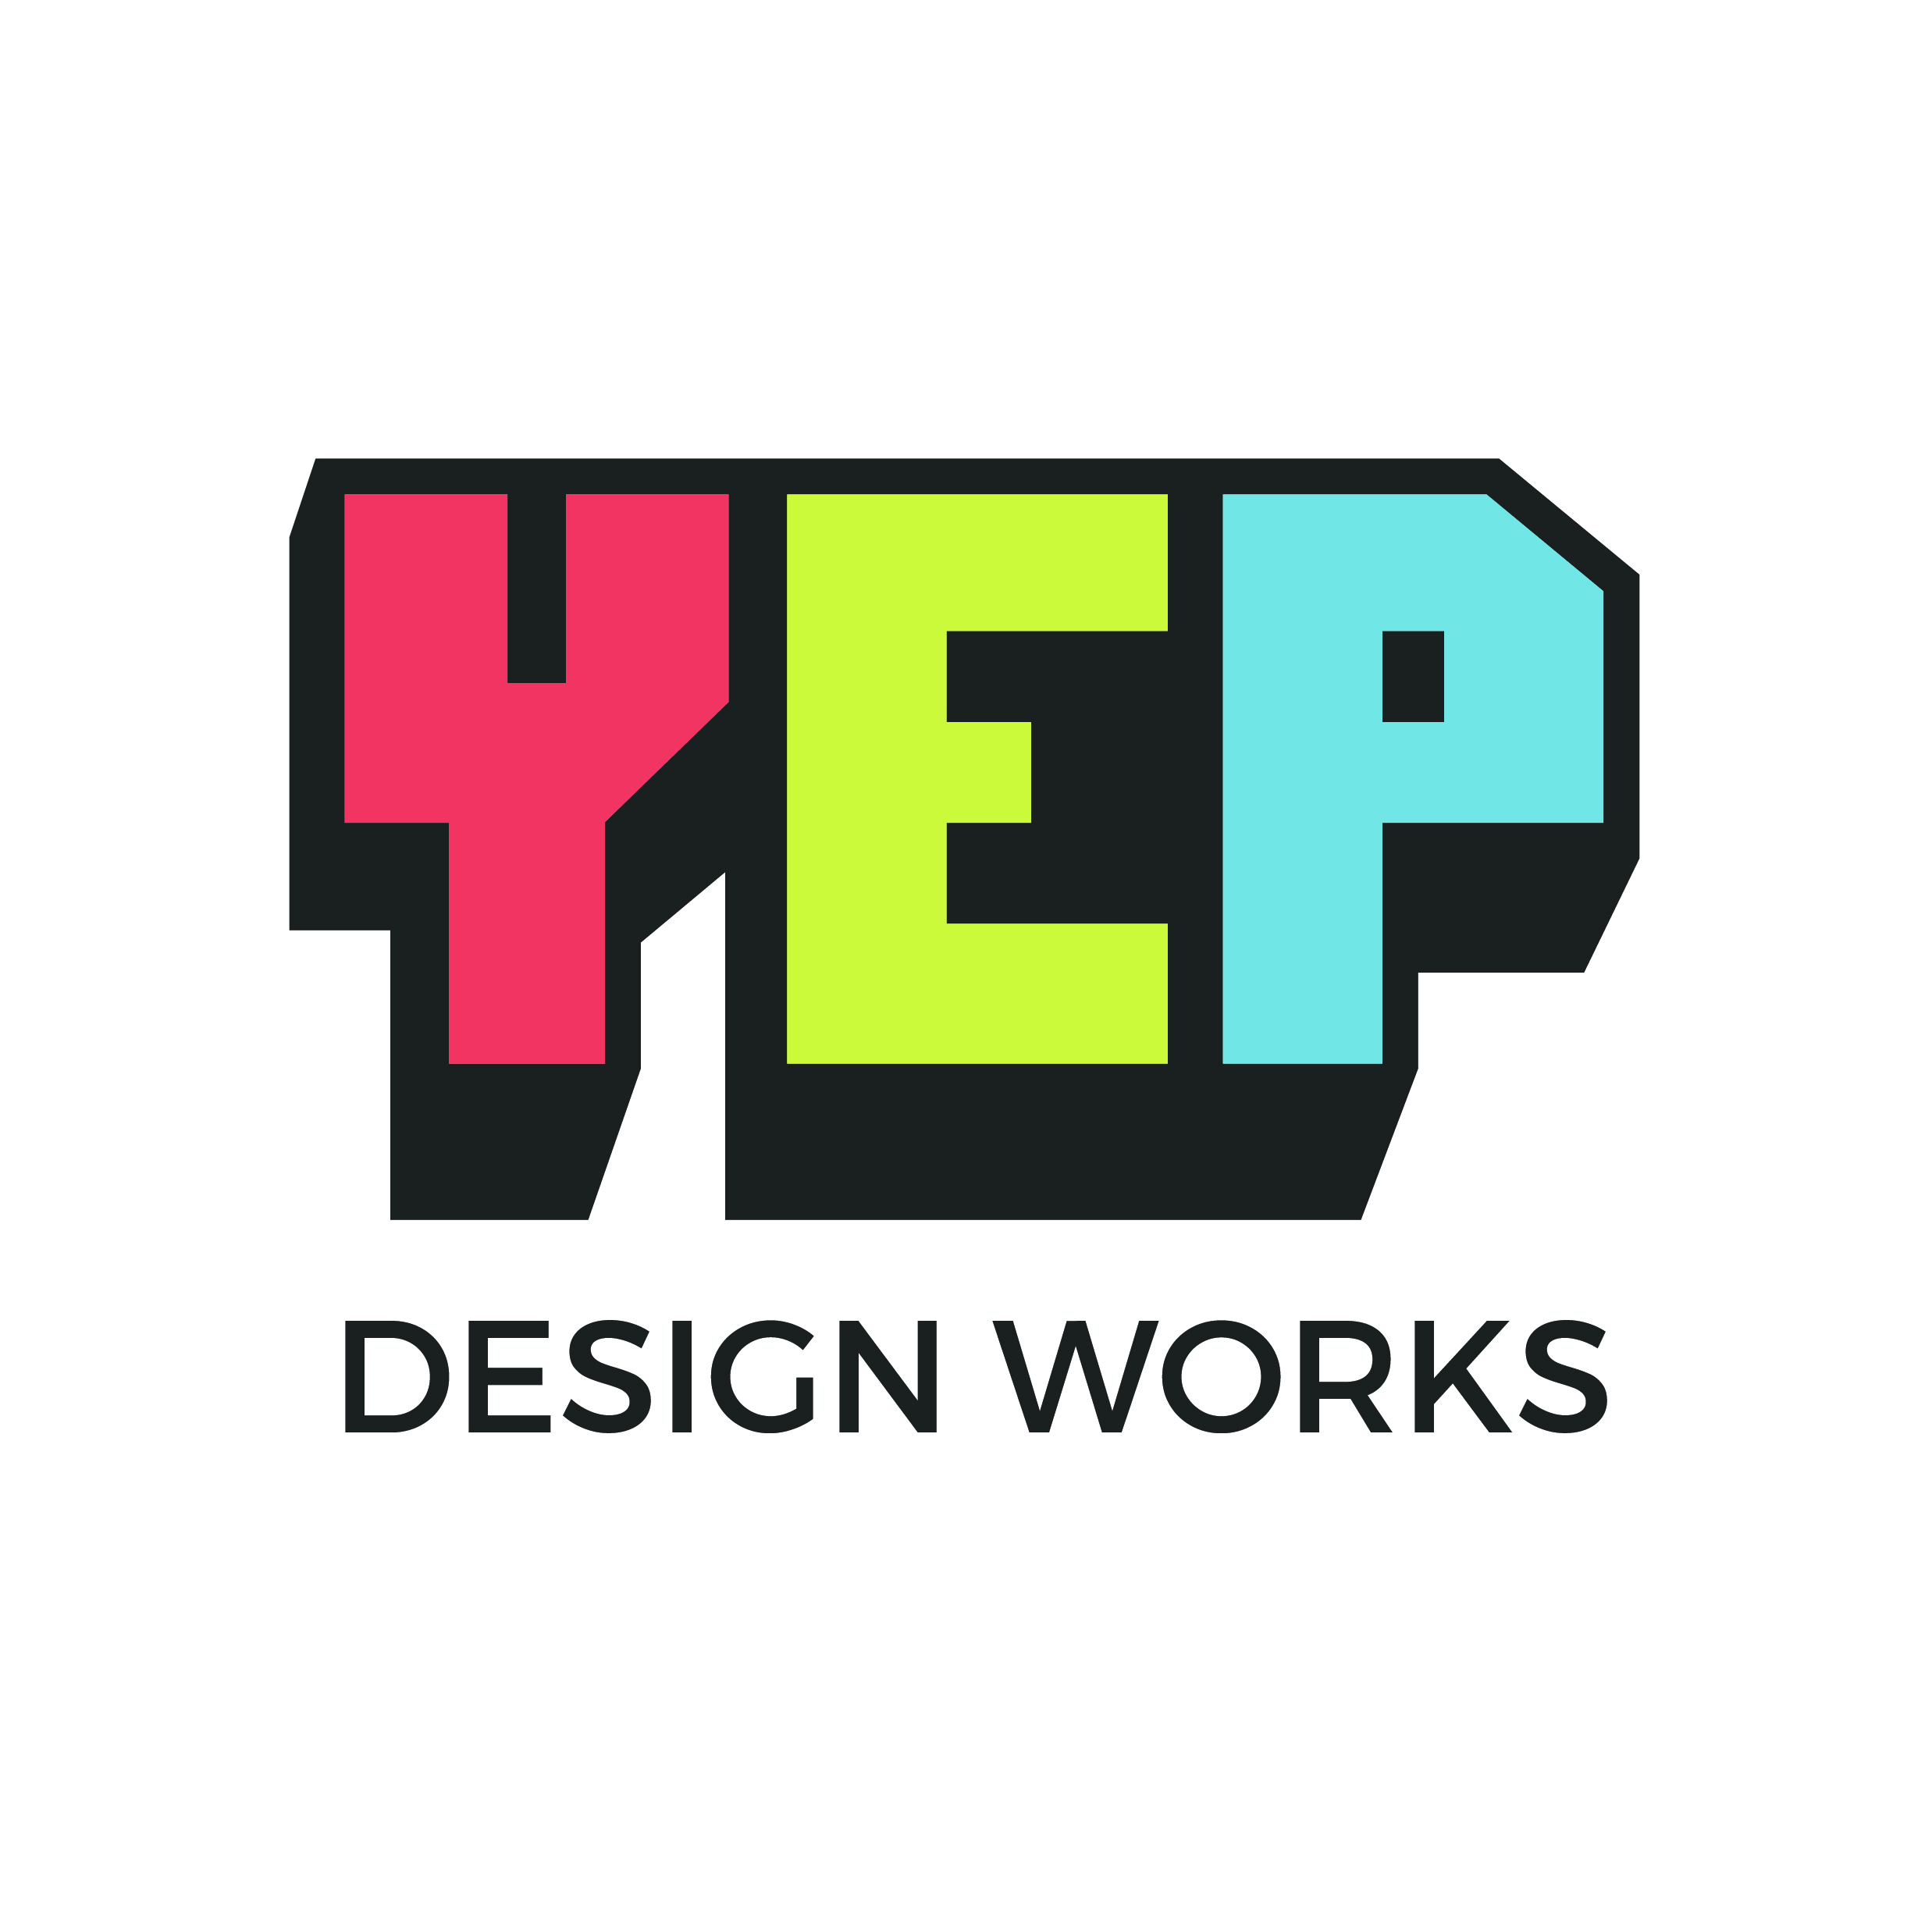 1__YEP Square Design Works Logo.jpg